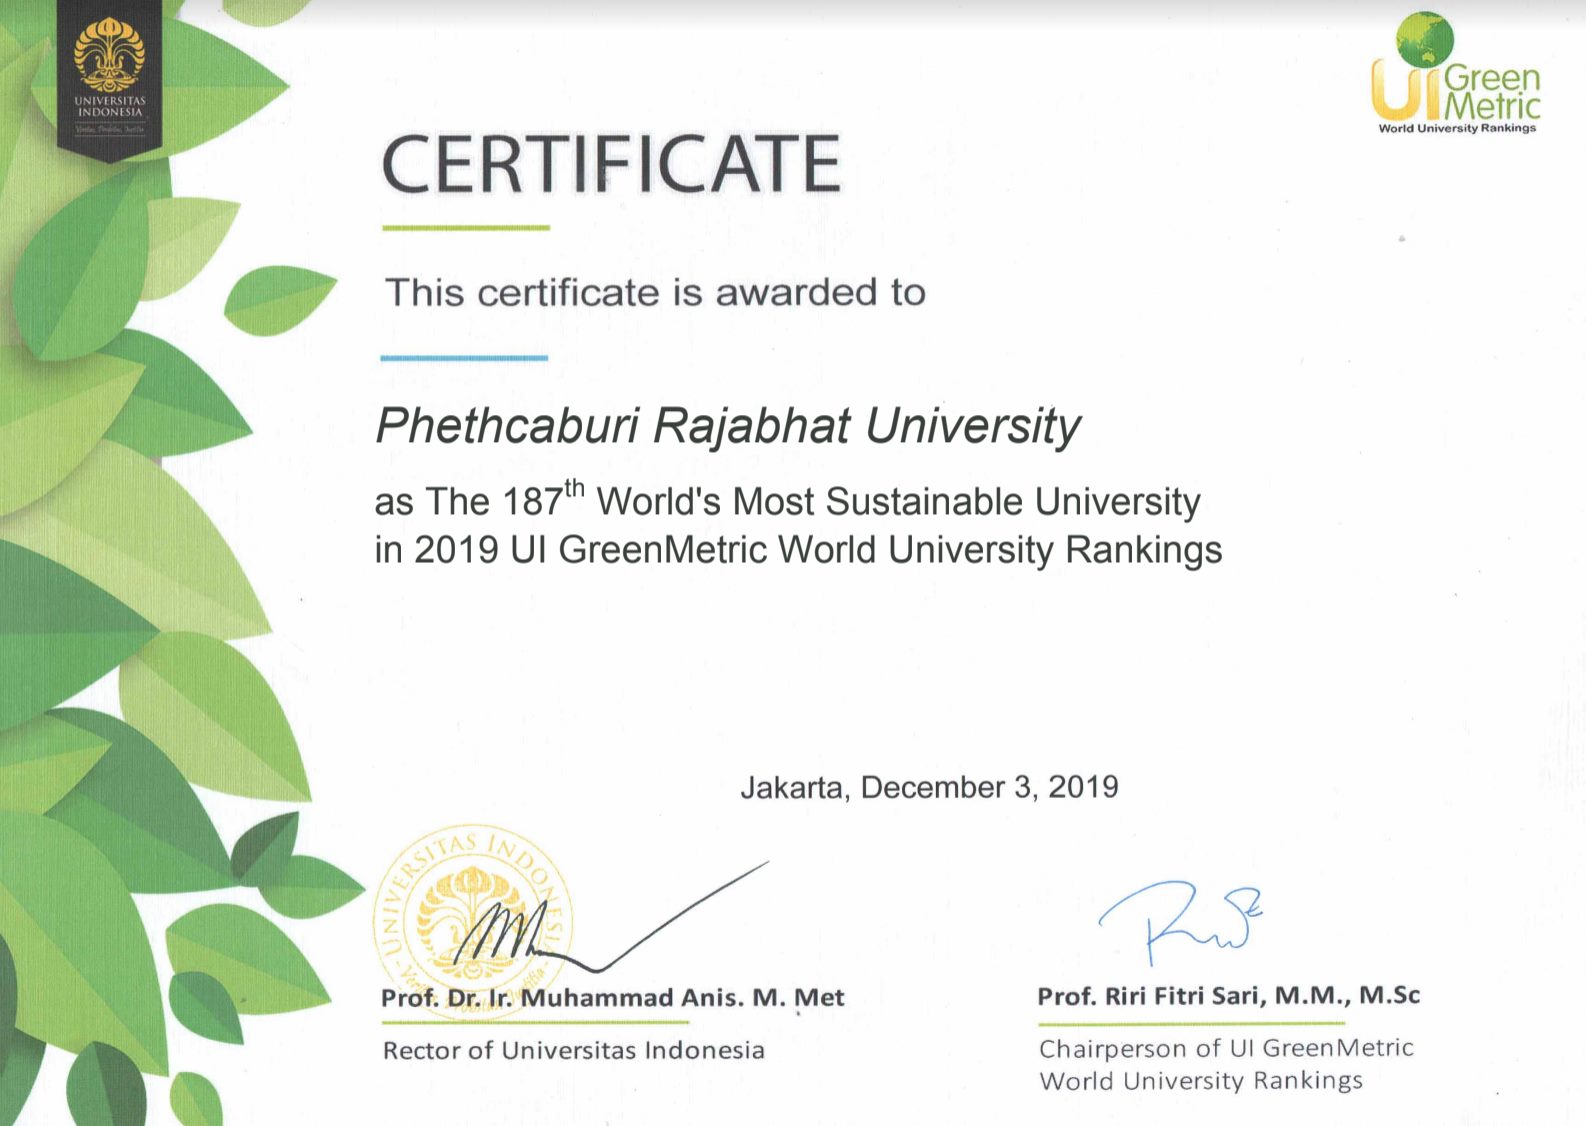 р╕бр╕лр╕▓р╕зр╕┤р╕Чр╕вр╕▓р╕ер╕▒р╕вр╕гр╕▓р╕Кр╕ар╕▒р╕Пр╣Ар╕Юр╕Кр╕гр╕Ър╕╕р╕гр╕╡ р╣Др╕Фр╣Йр╕гр╕▒р╕Ър╕Бр╕▓р╕гр╕Ир╕▒р╕Фр╕нр╕▒р╕Щр╕Фр╕▒р╕Ър╕бр╕лр╕▓р╕зр╕┤р╕Чр╕вр╕▓р╕ер╕▒р╕вр╕кр╕╡р╣Ар╕Вр╕╡р╕вр╕зр╣Вр╕ер╕Б р╕Ыр╕╡ 2019 (UI Green Metric World University Rankings 2019)